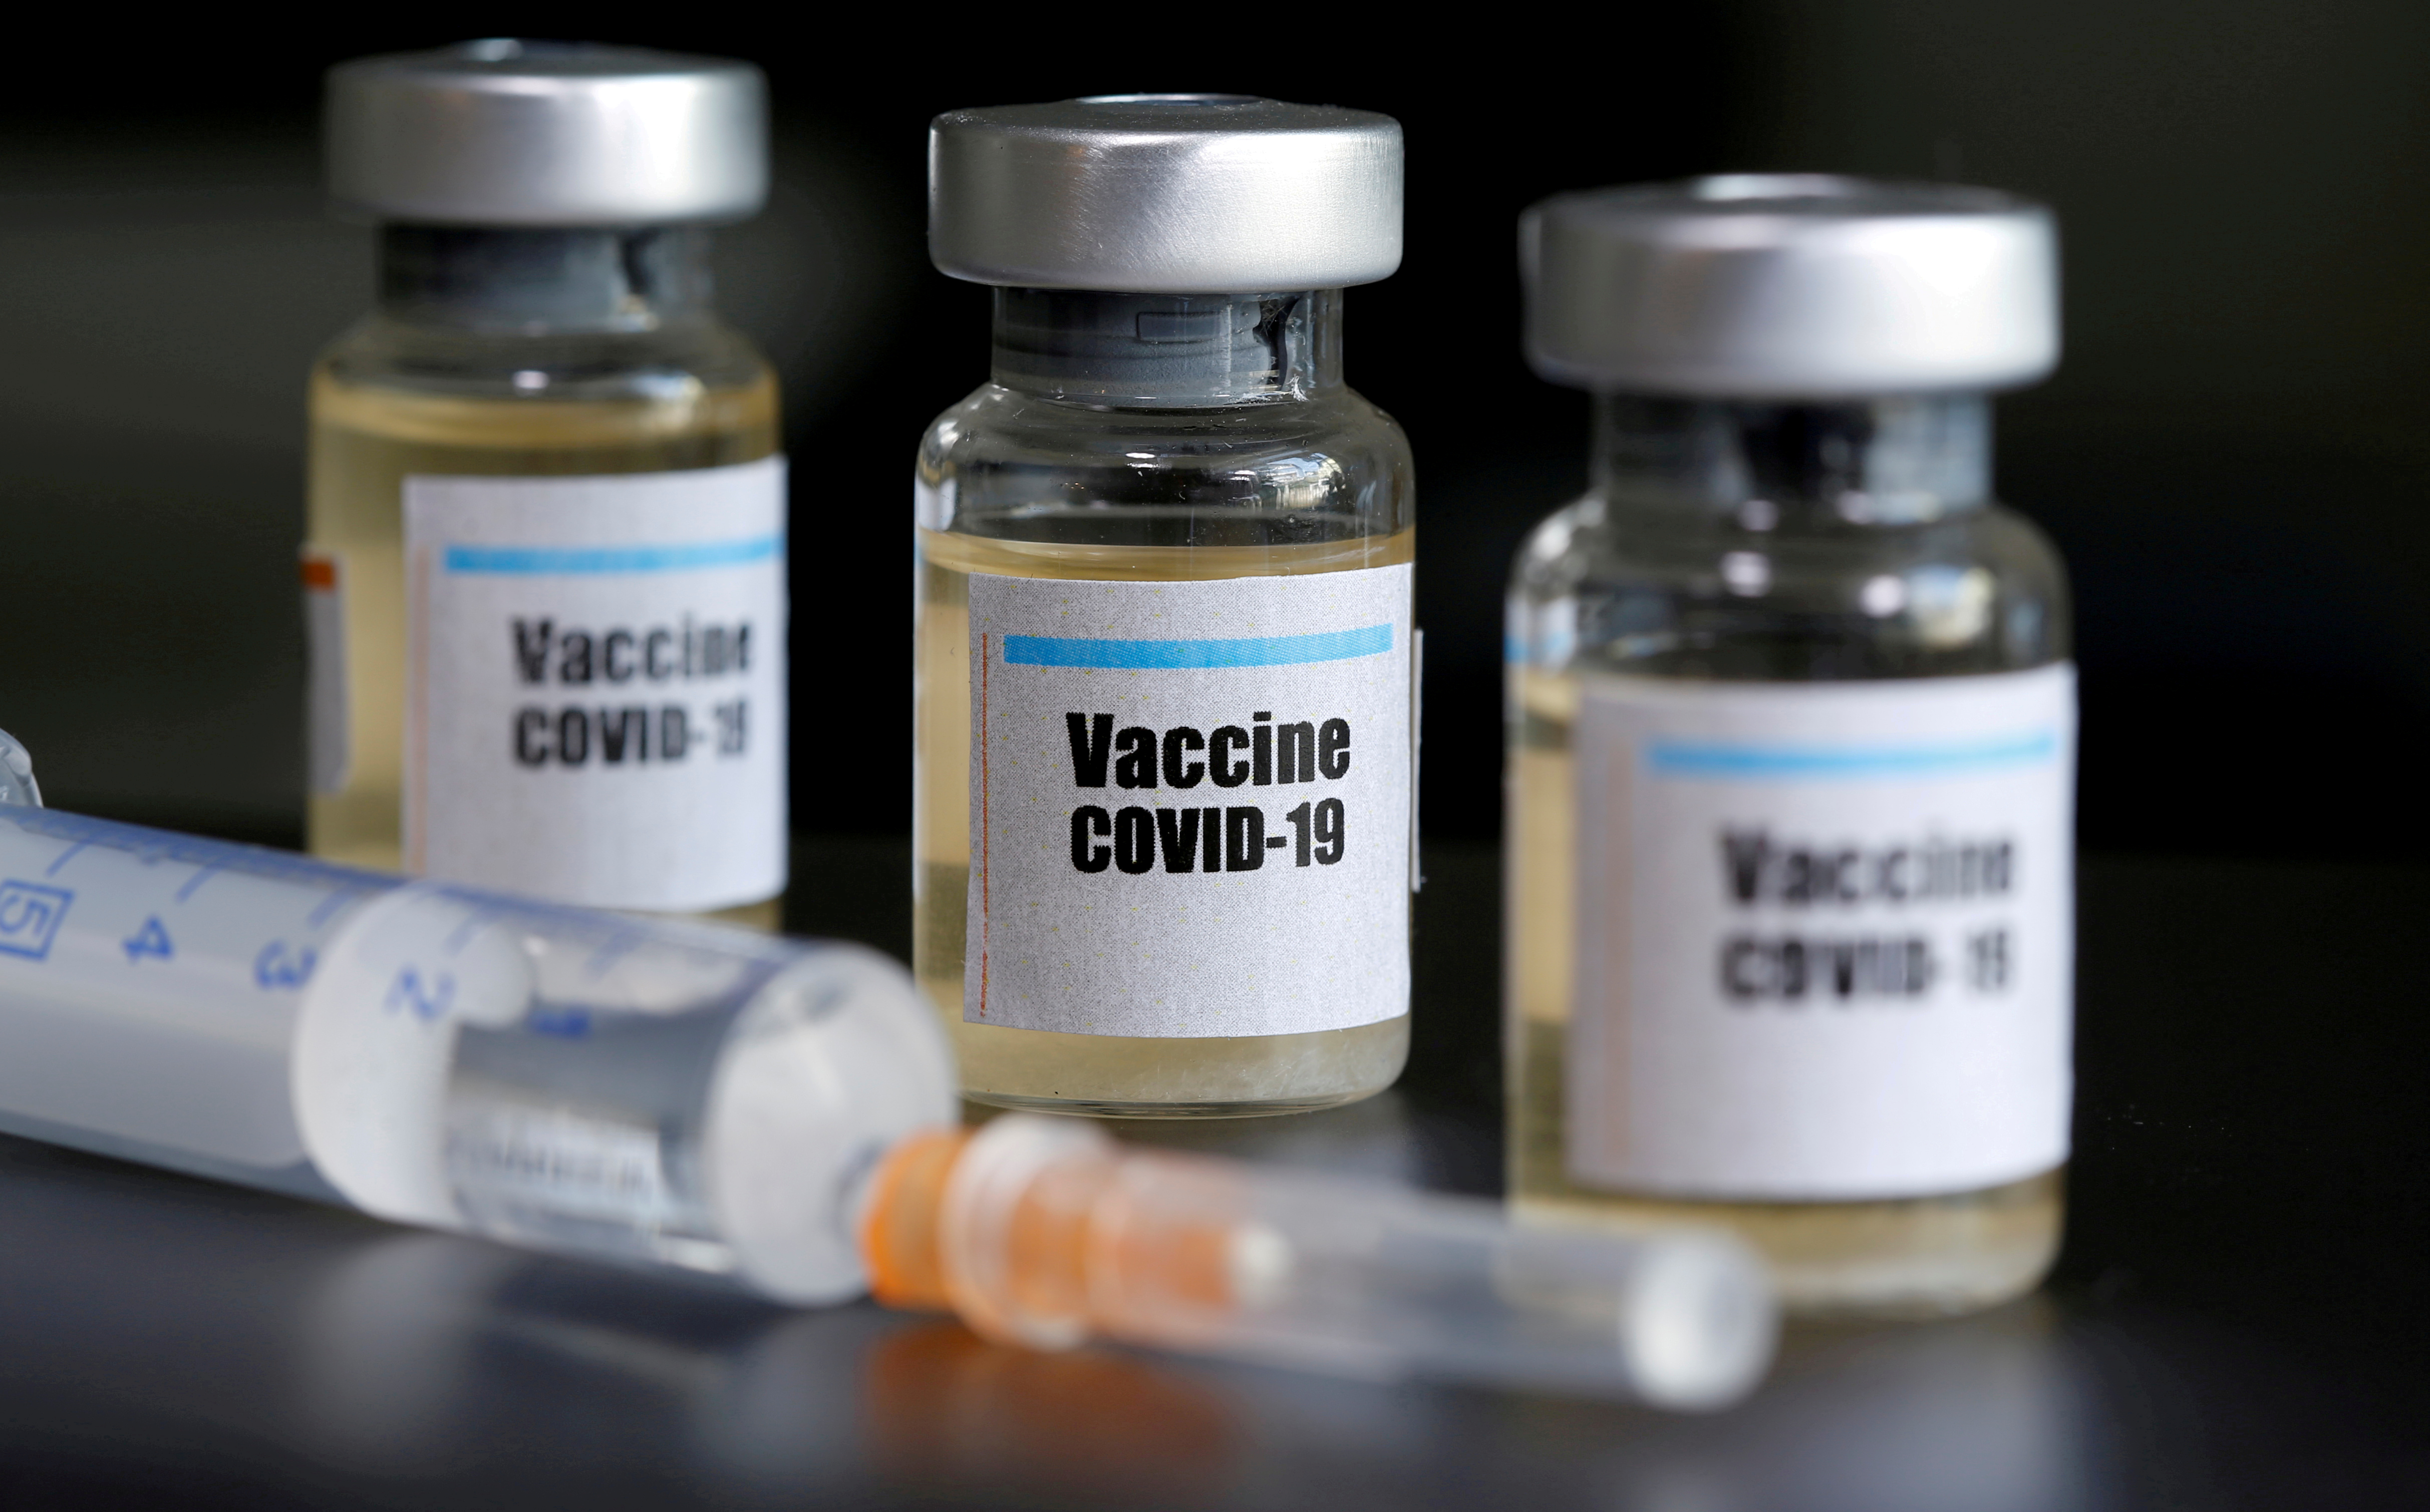 Posible vacuna china contra Covid-19 se muestra prometedora en pruebas con animales